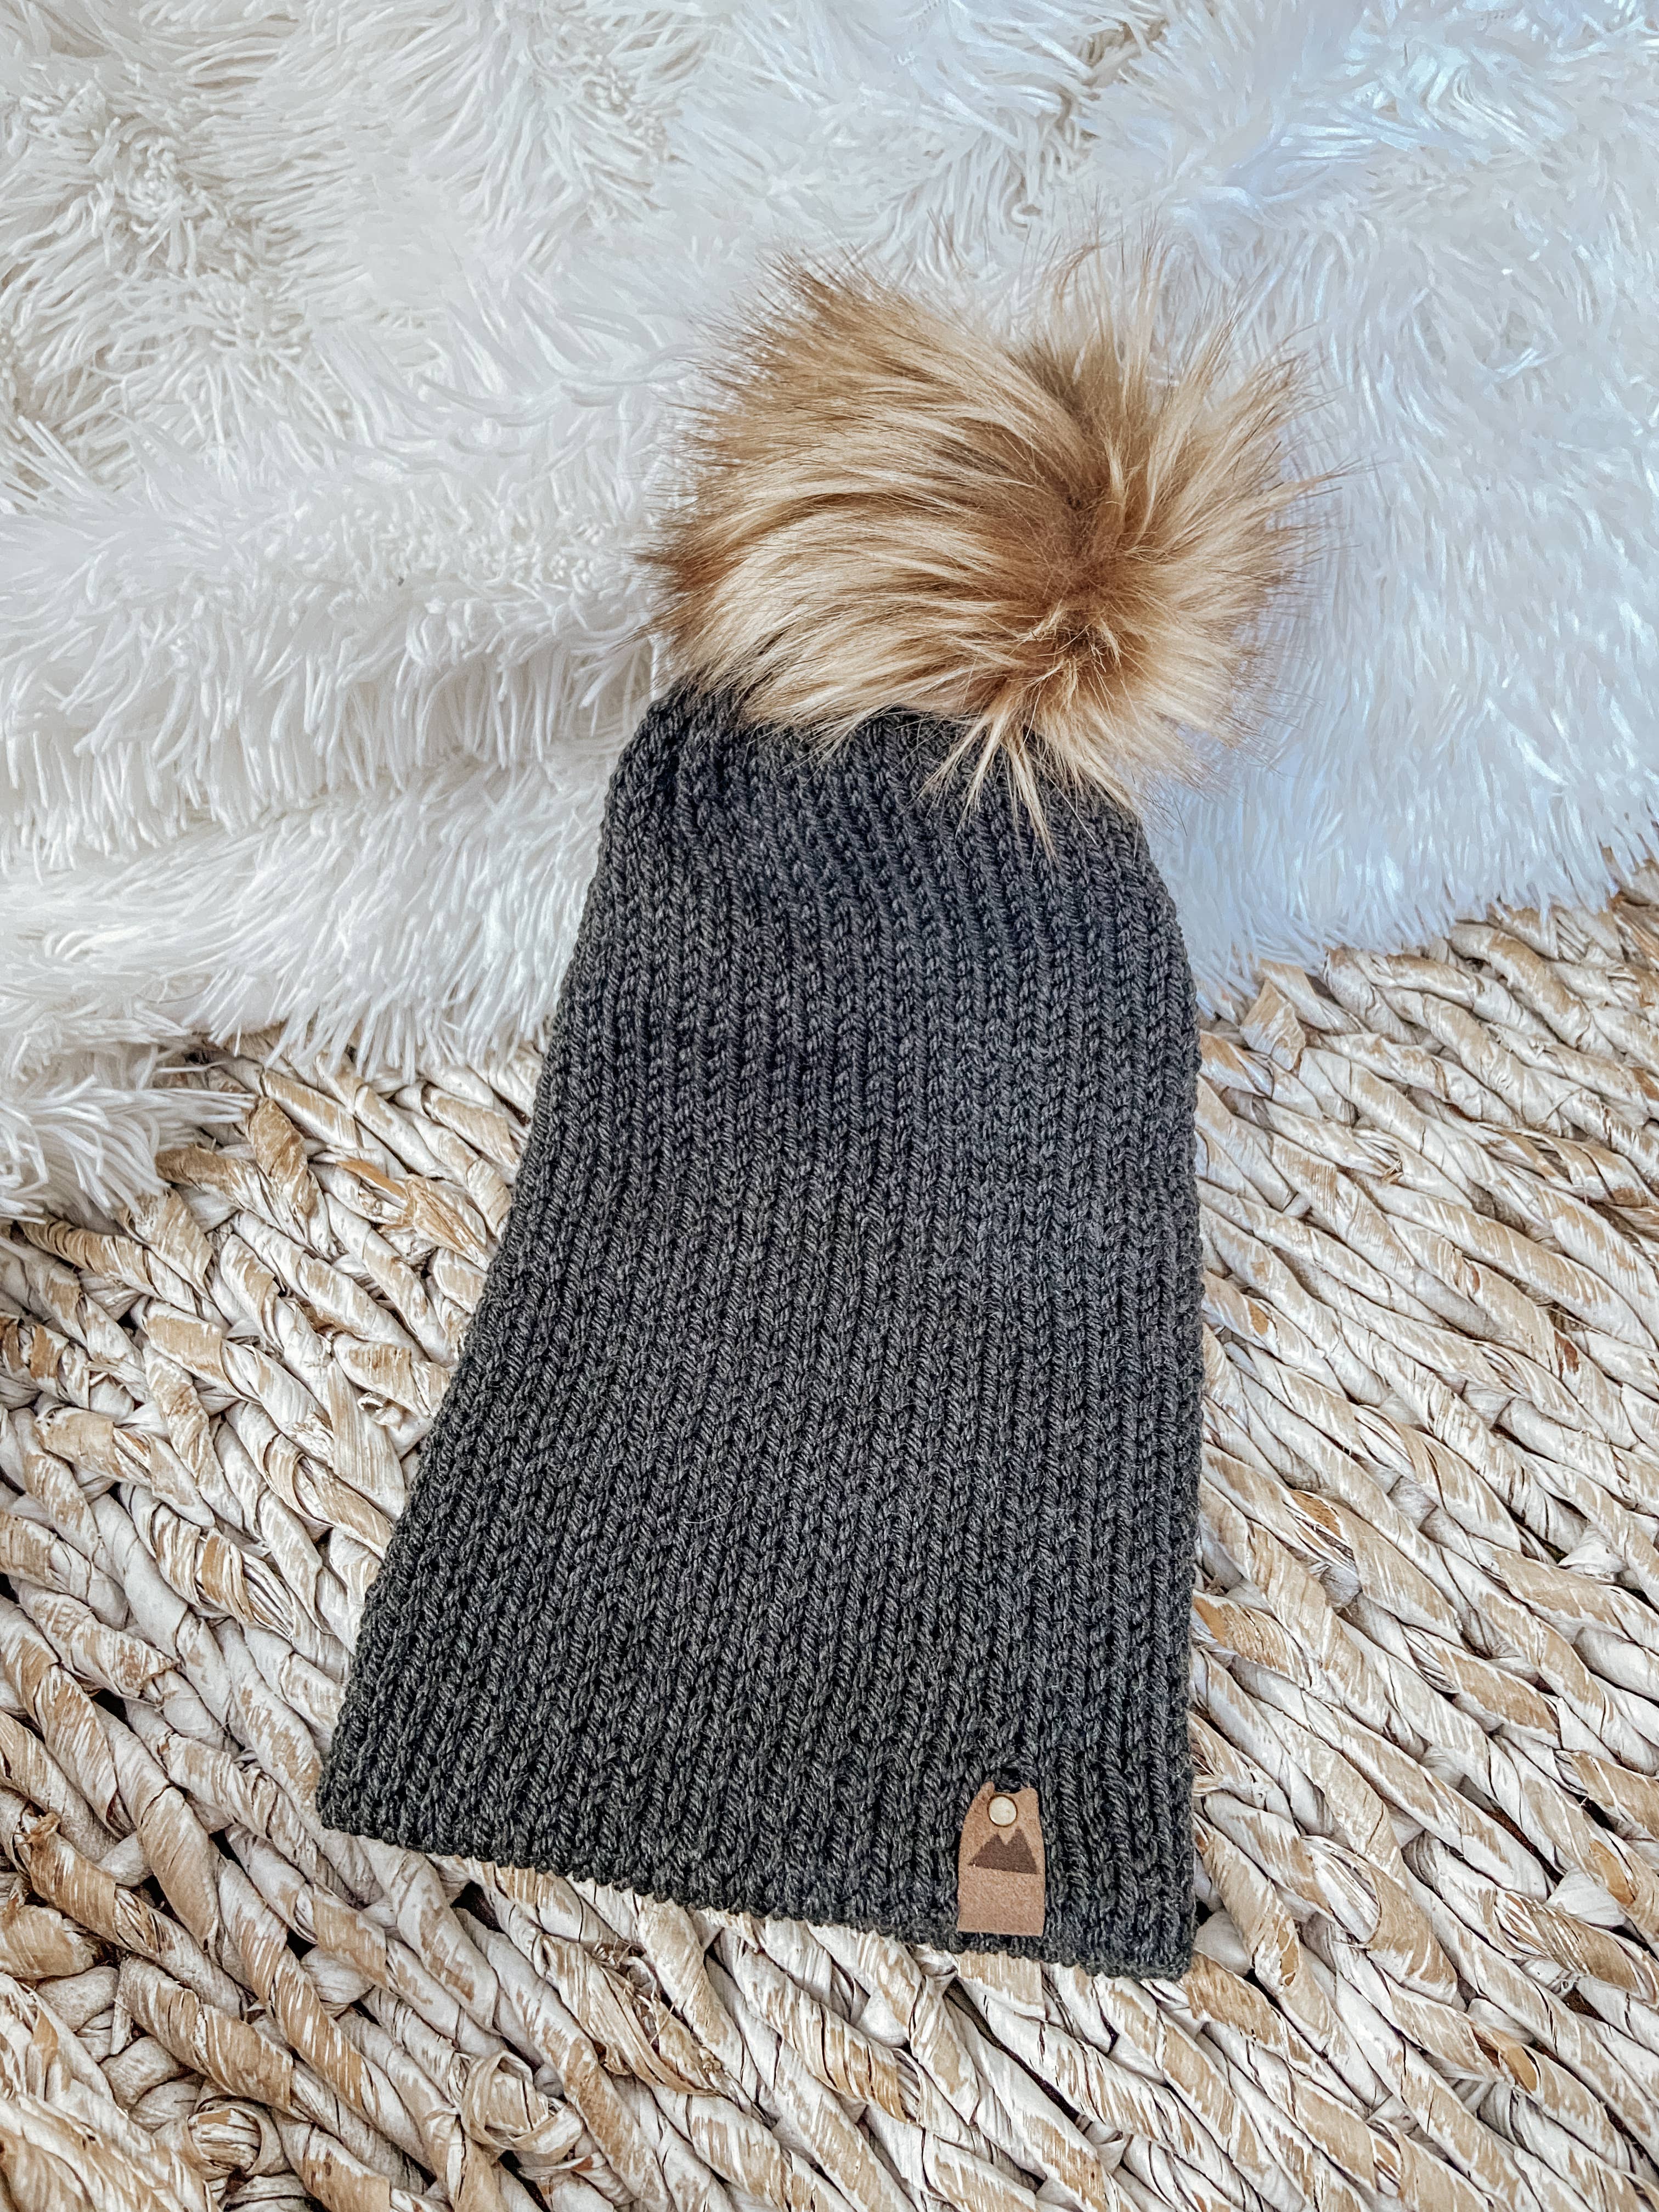 Charcoal Knit Beanie Toque with Fur Pom Pom